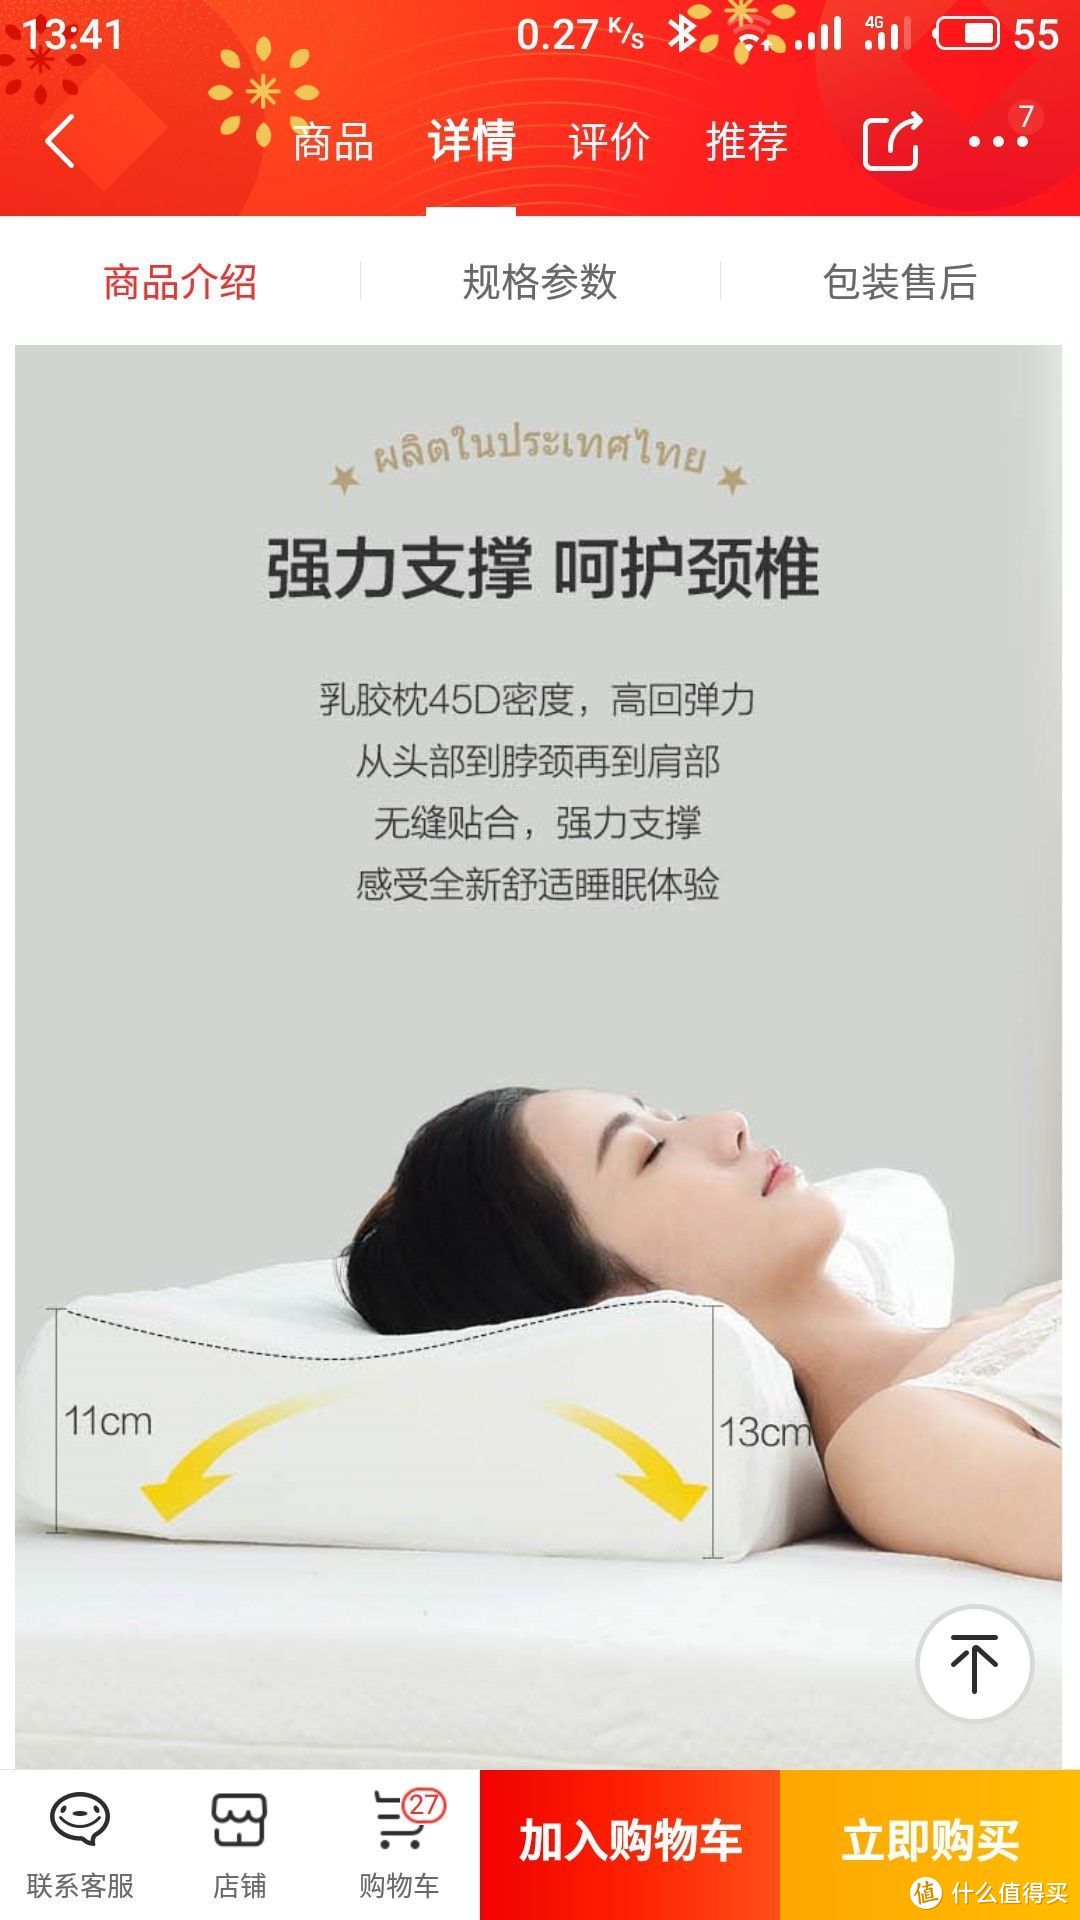 根据商品页面的宣传，这款枕头密度45D，高度为11-13cm